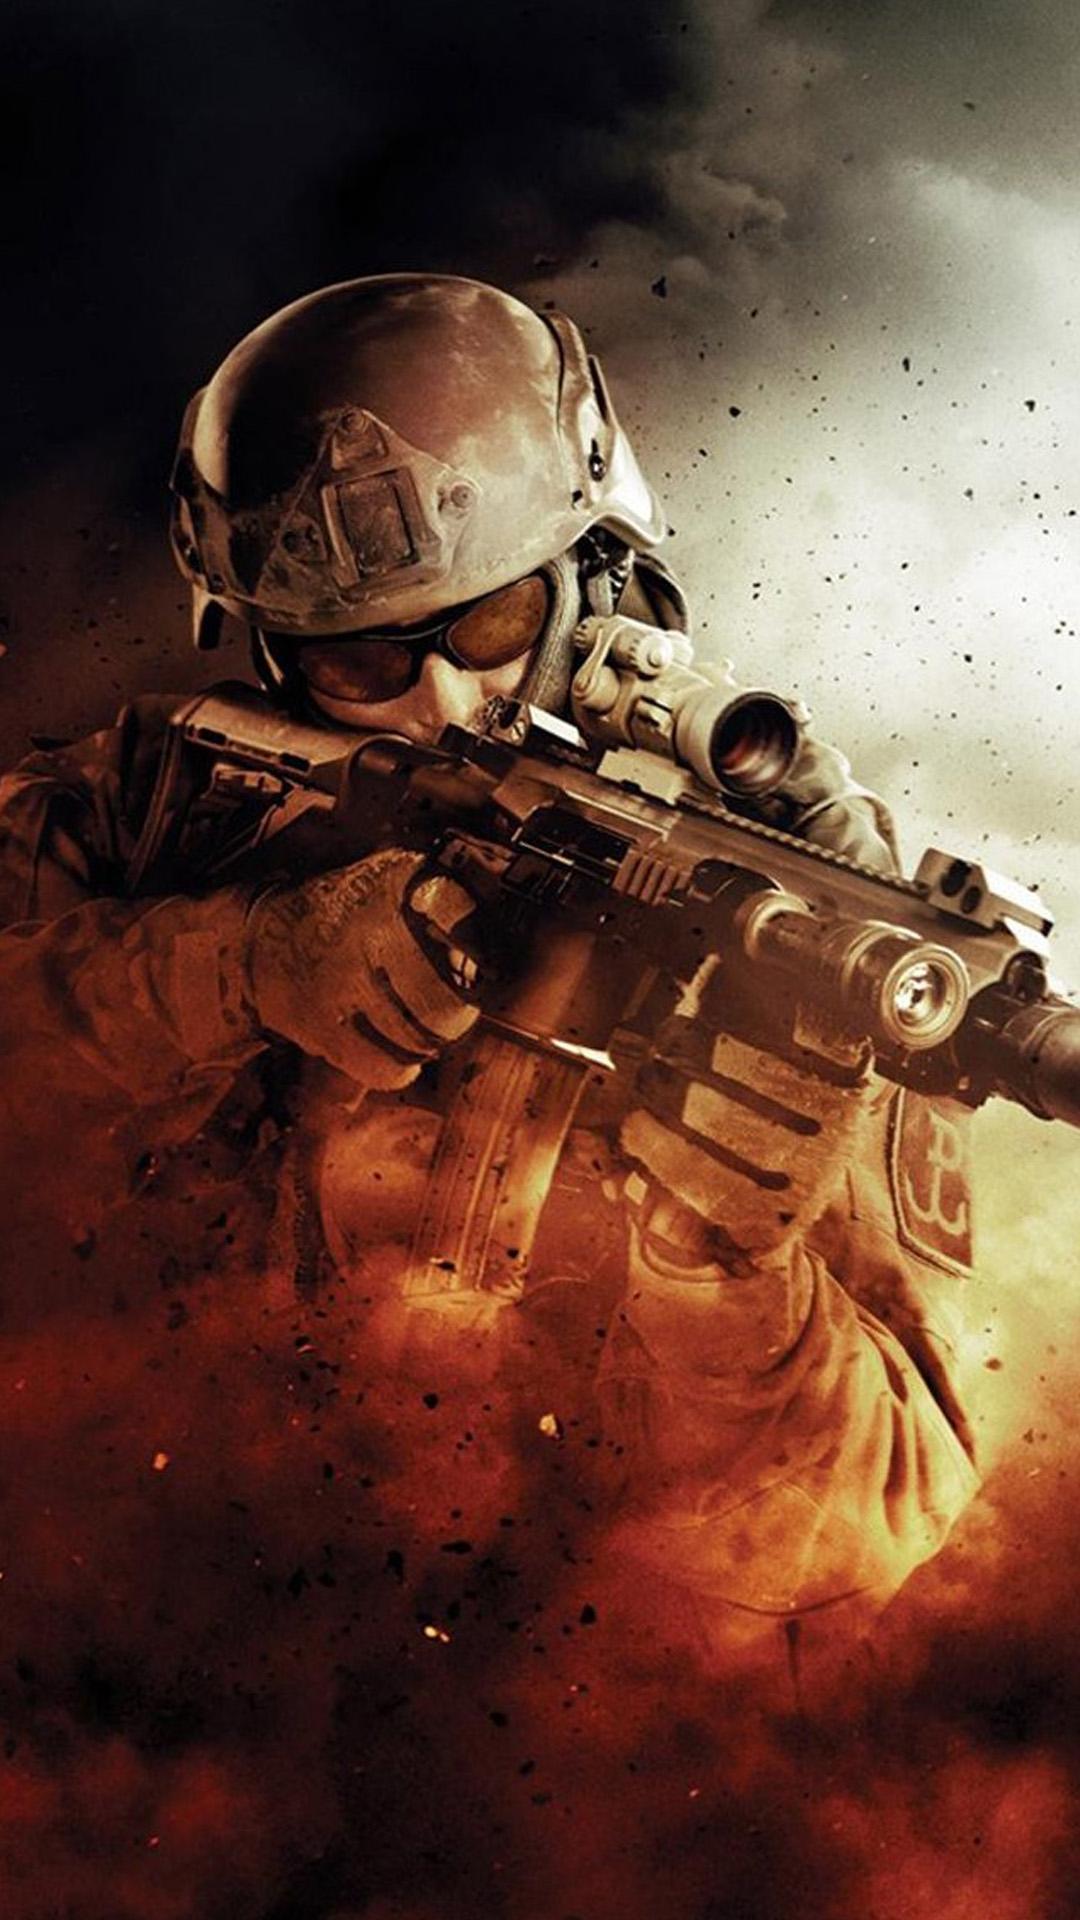 War Fire Fight Soldier Gun Weapon iPhone 8 Wallpaper Free